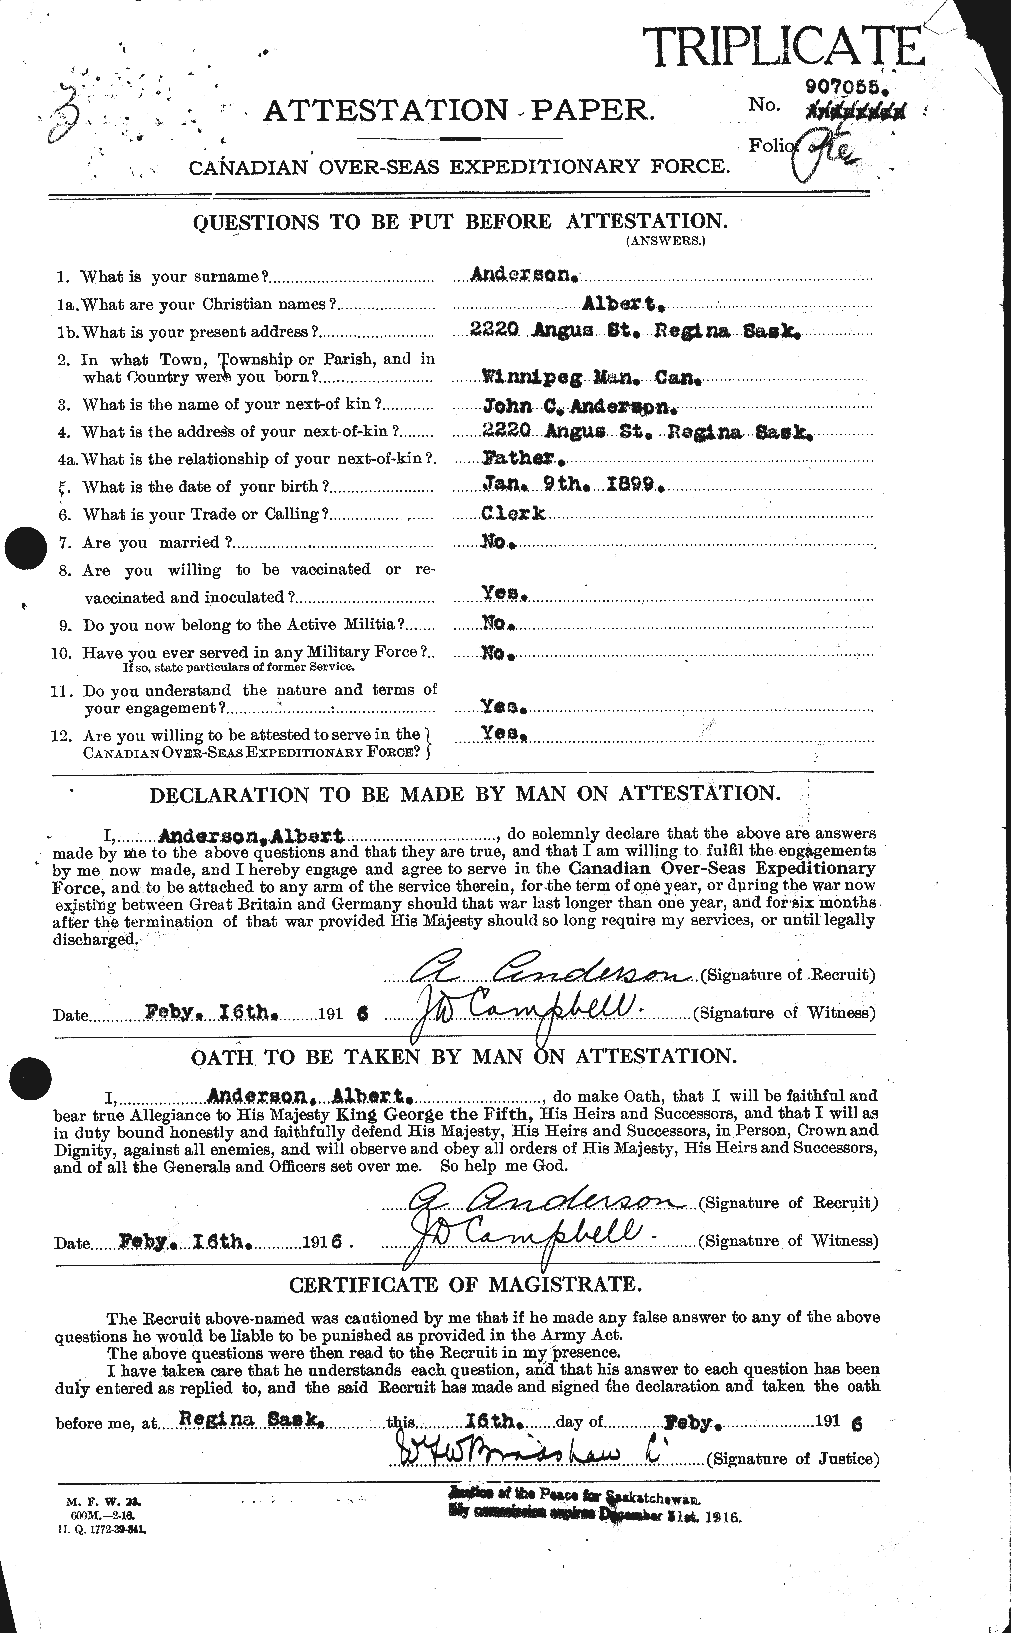 Dossiers du Personnel de la Première Guerre mondiale - CEC 209550a